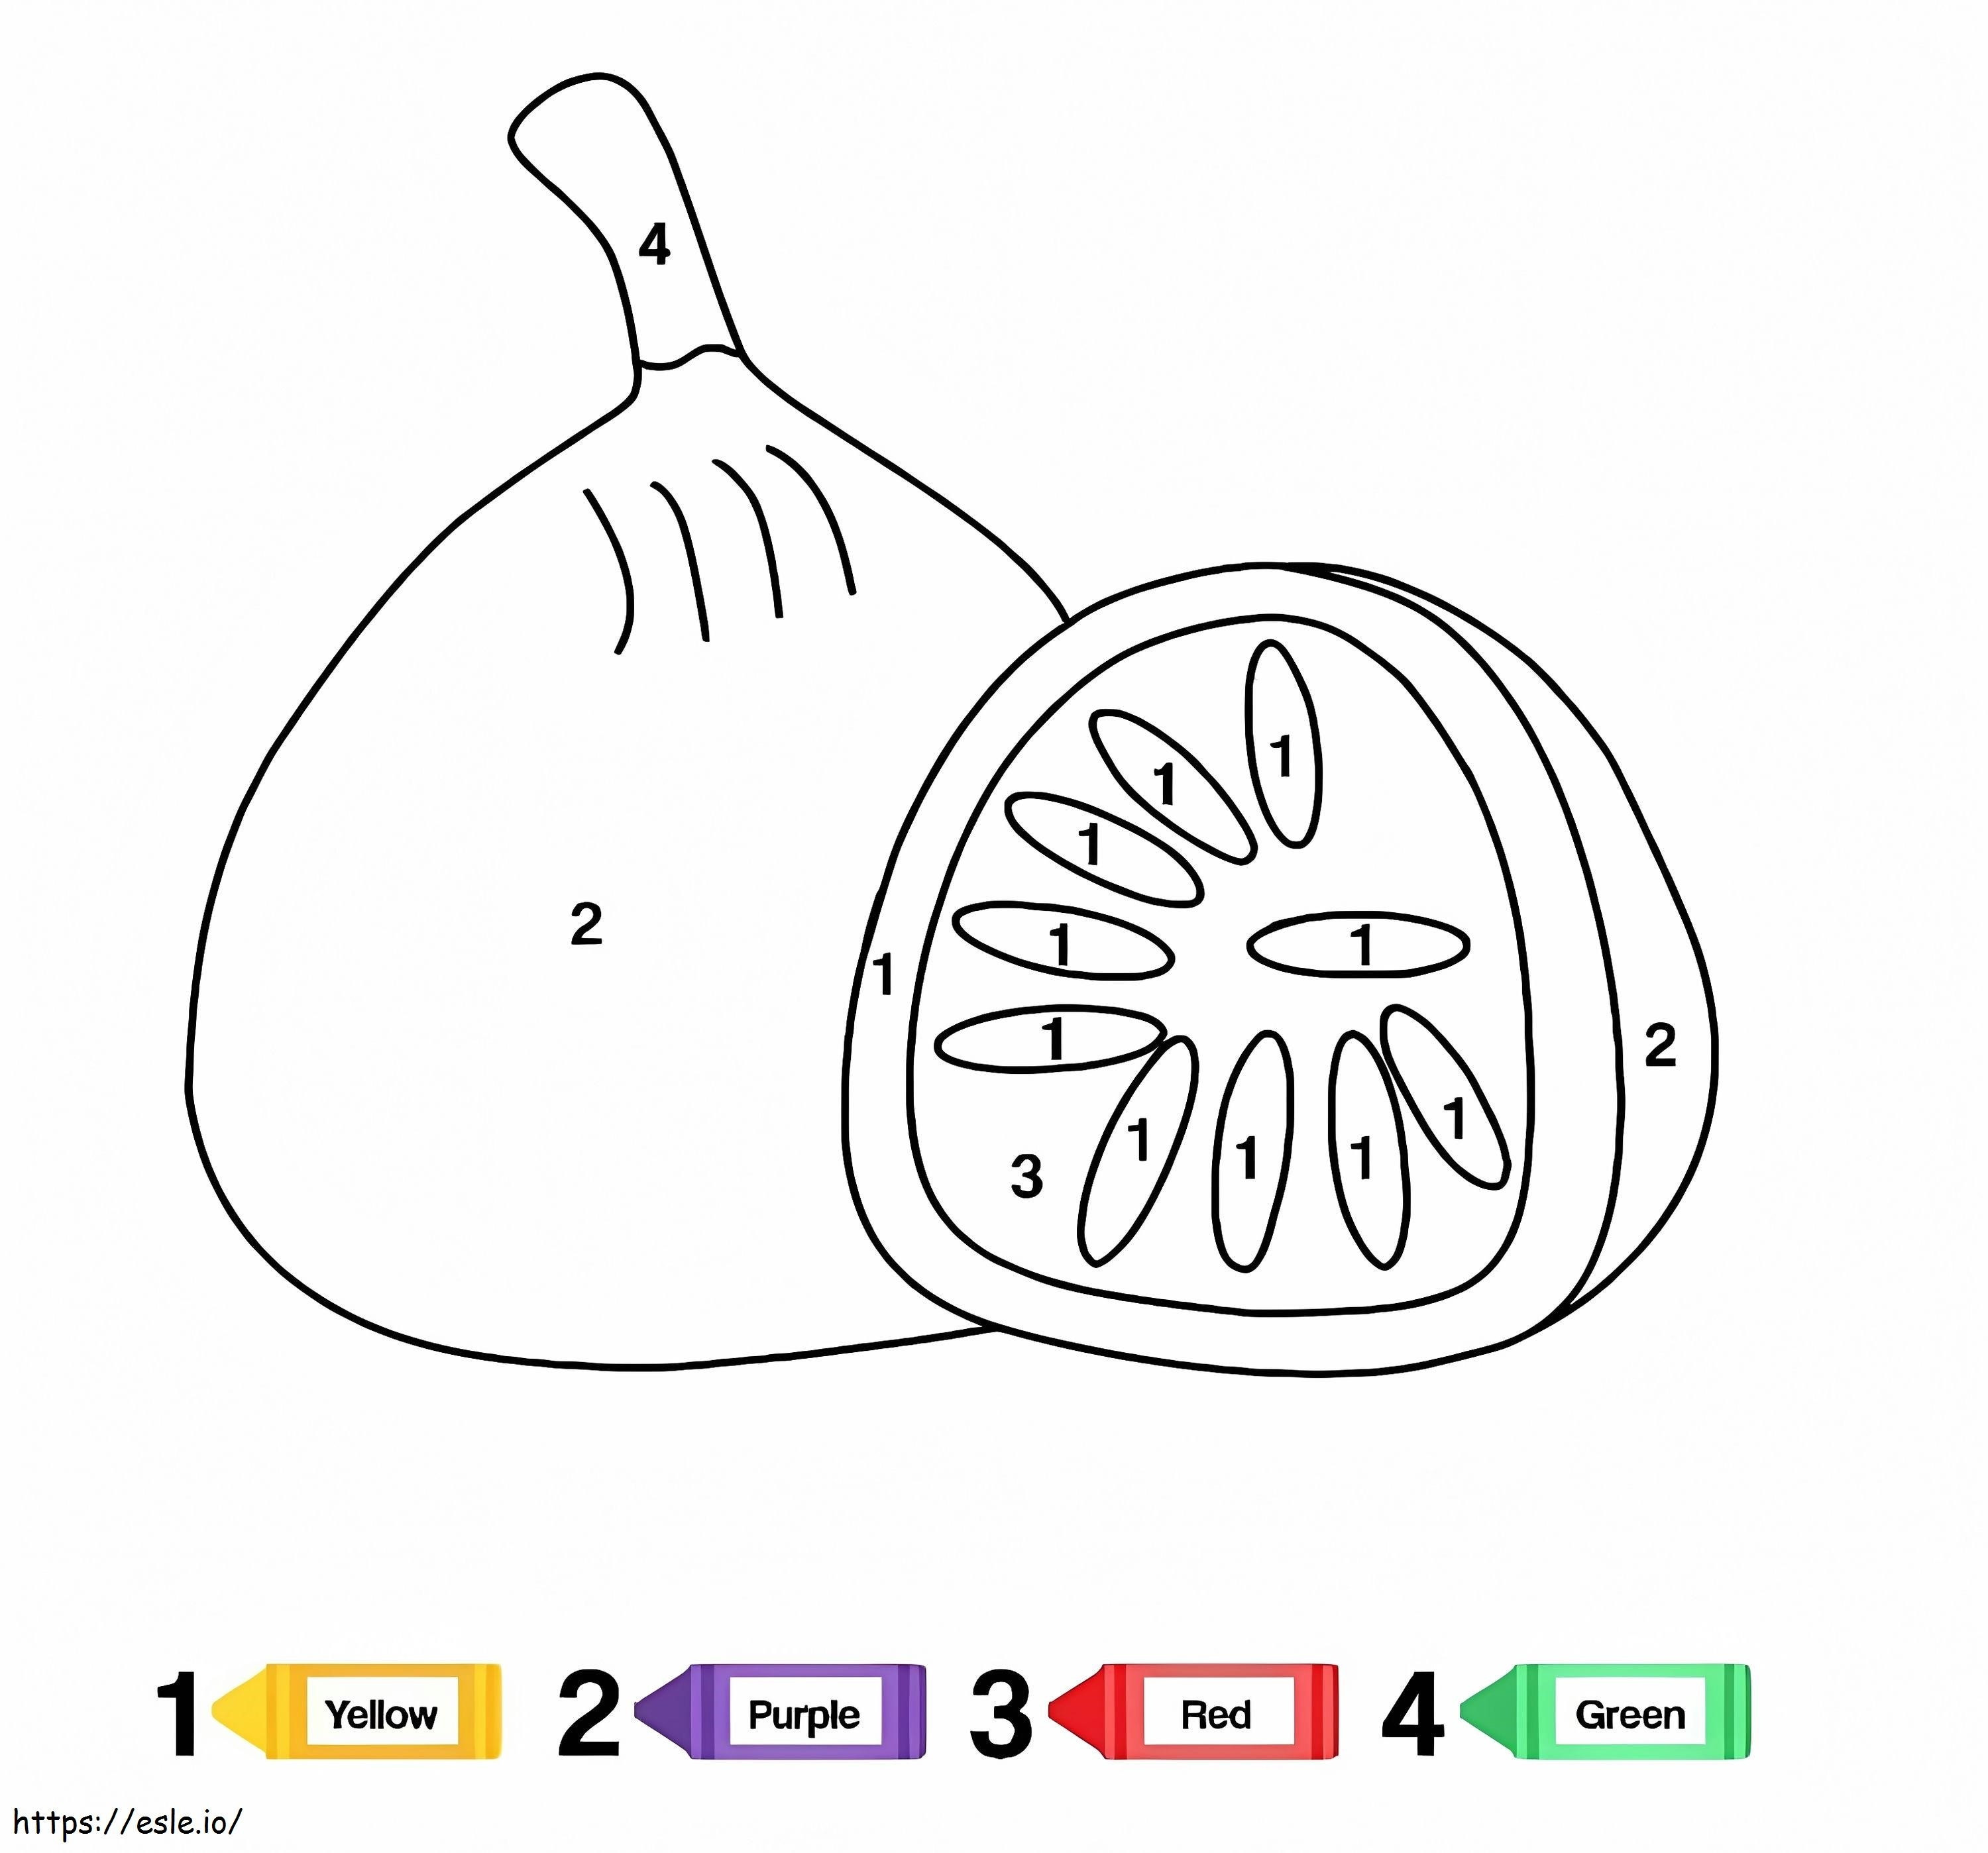 Kolorowanie owoców figowych według numerów kolorowanka